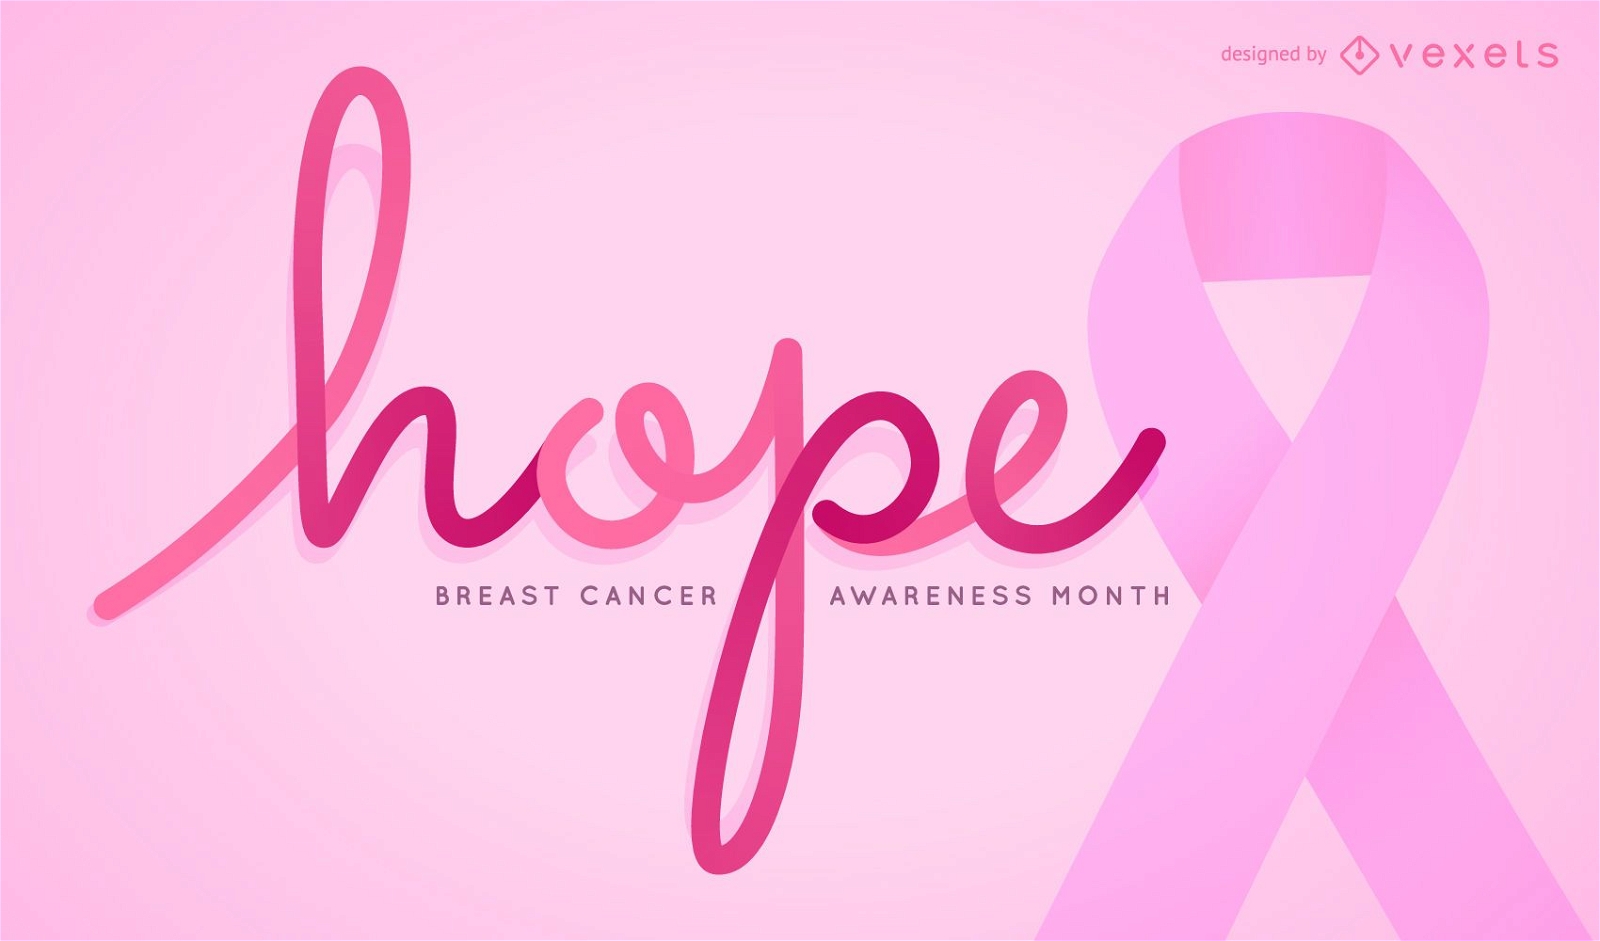 Hoffnungszeichen f?r Brustkrebs-Bewusstseins-Monat